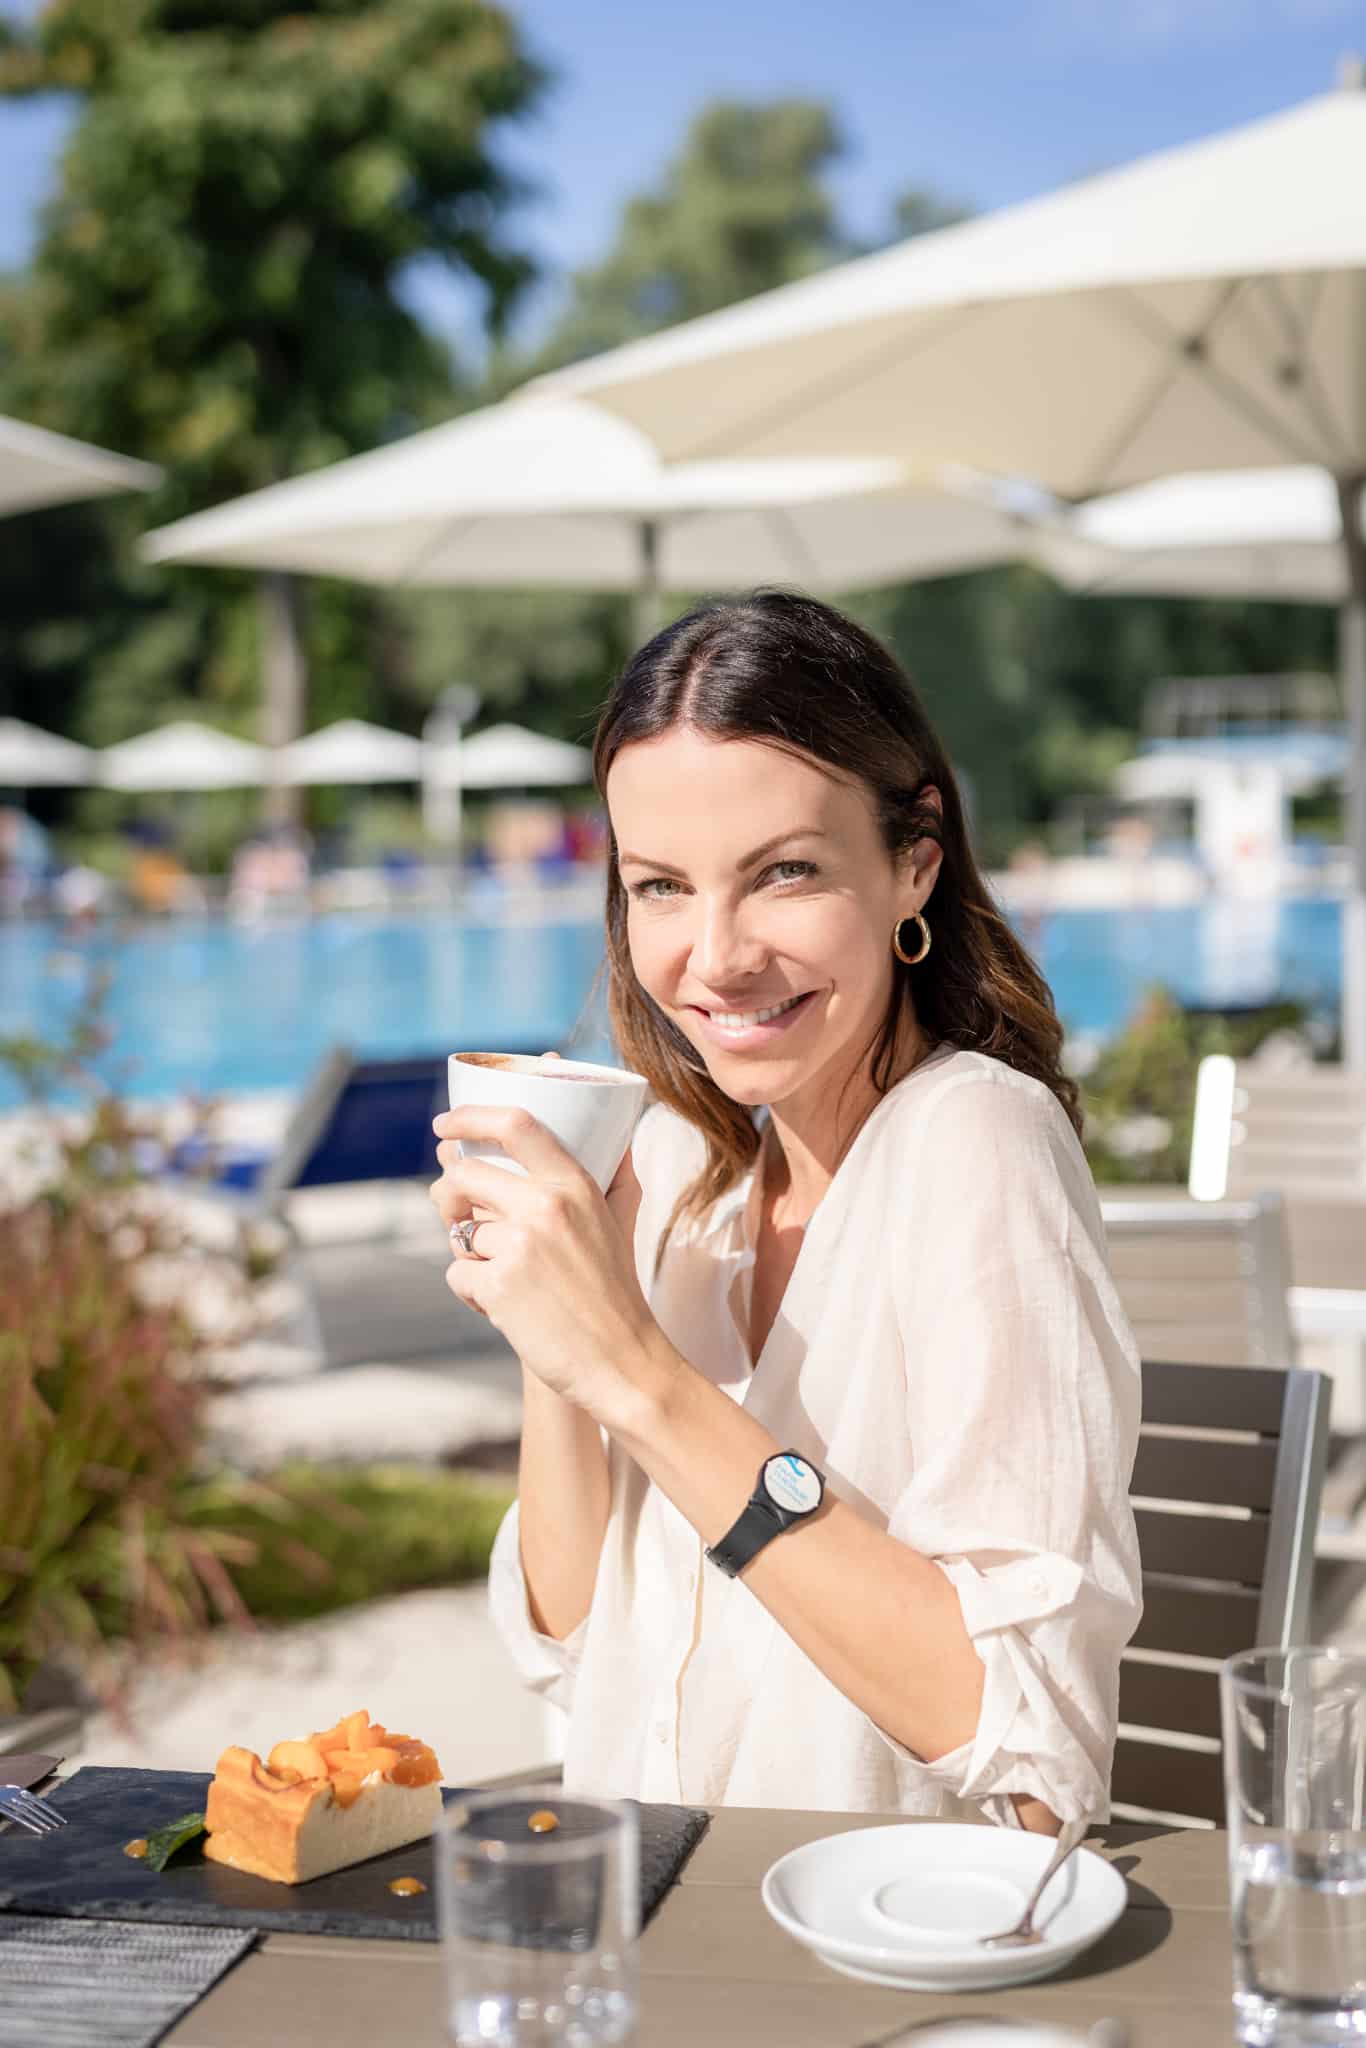 Eine Dame sitzt im Außenbereich des Restaurants Mehrblick und hält eine Tasse Kaffee in der Hand. Im Hintergrund sind Sonnenschirme, Liegen und das 50-Meter-Sportbecken der Parktherme zu sehen.